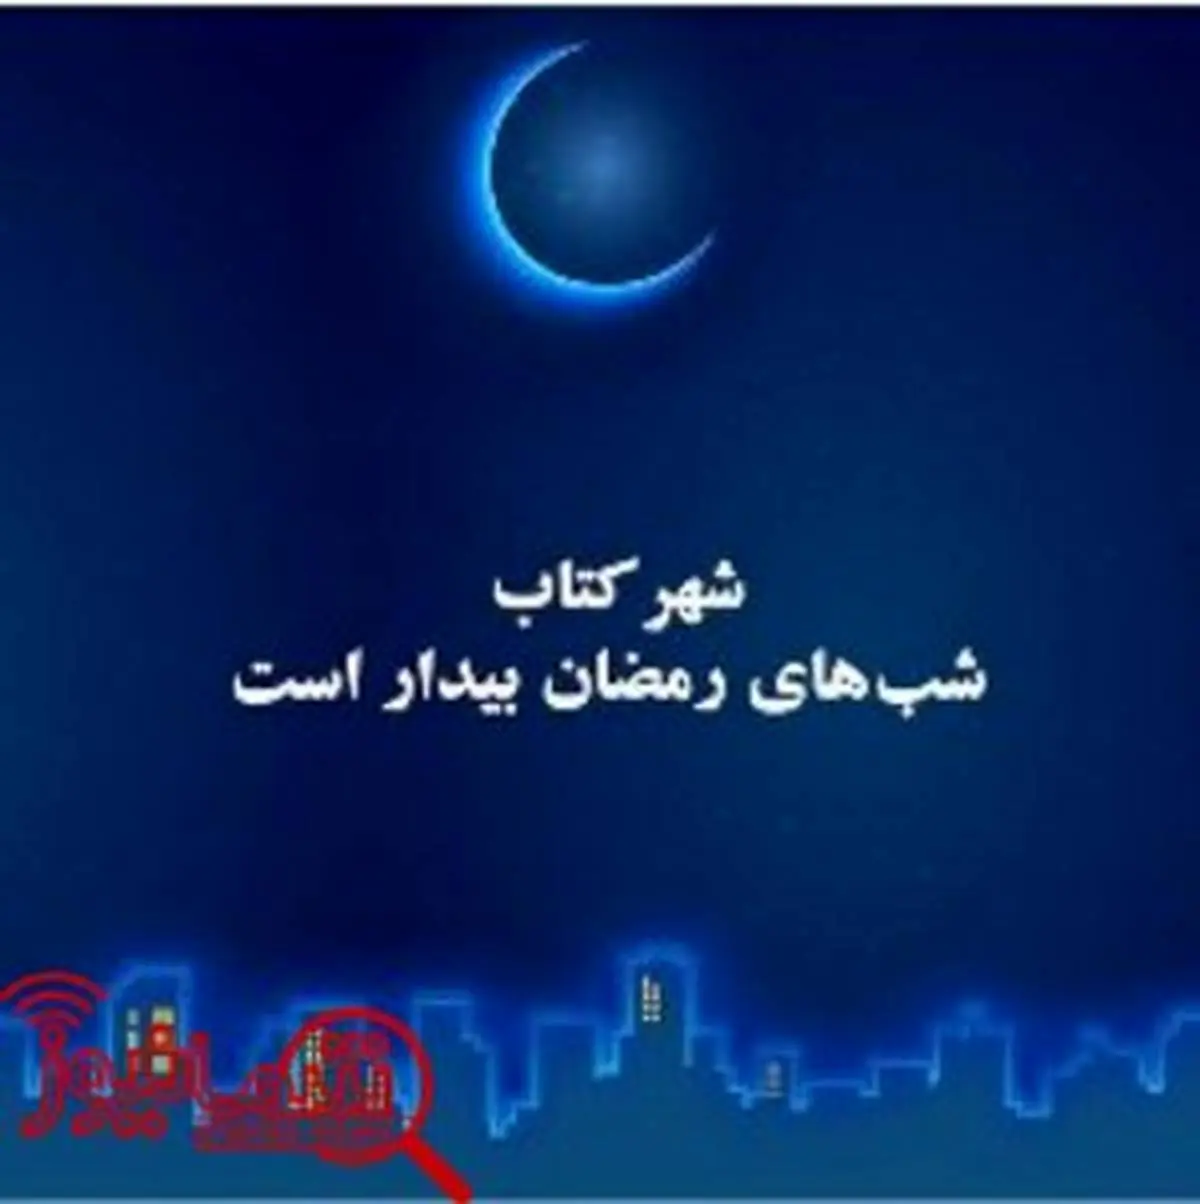 ویژه برنامه شهر کتاب در ماه مبارک رمضان